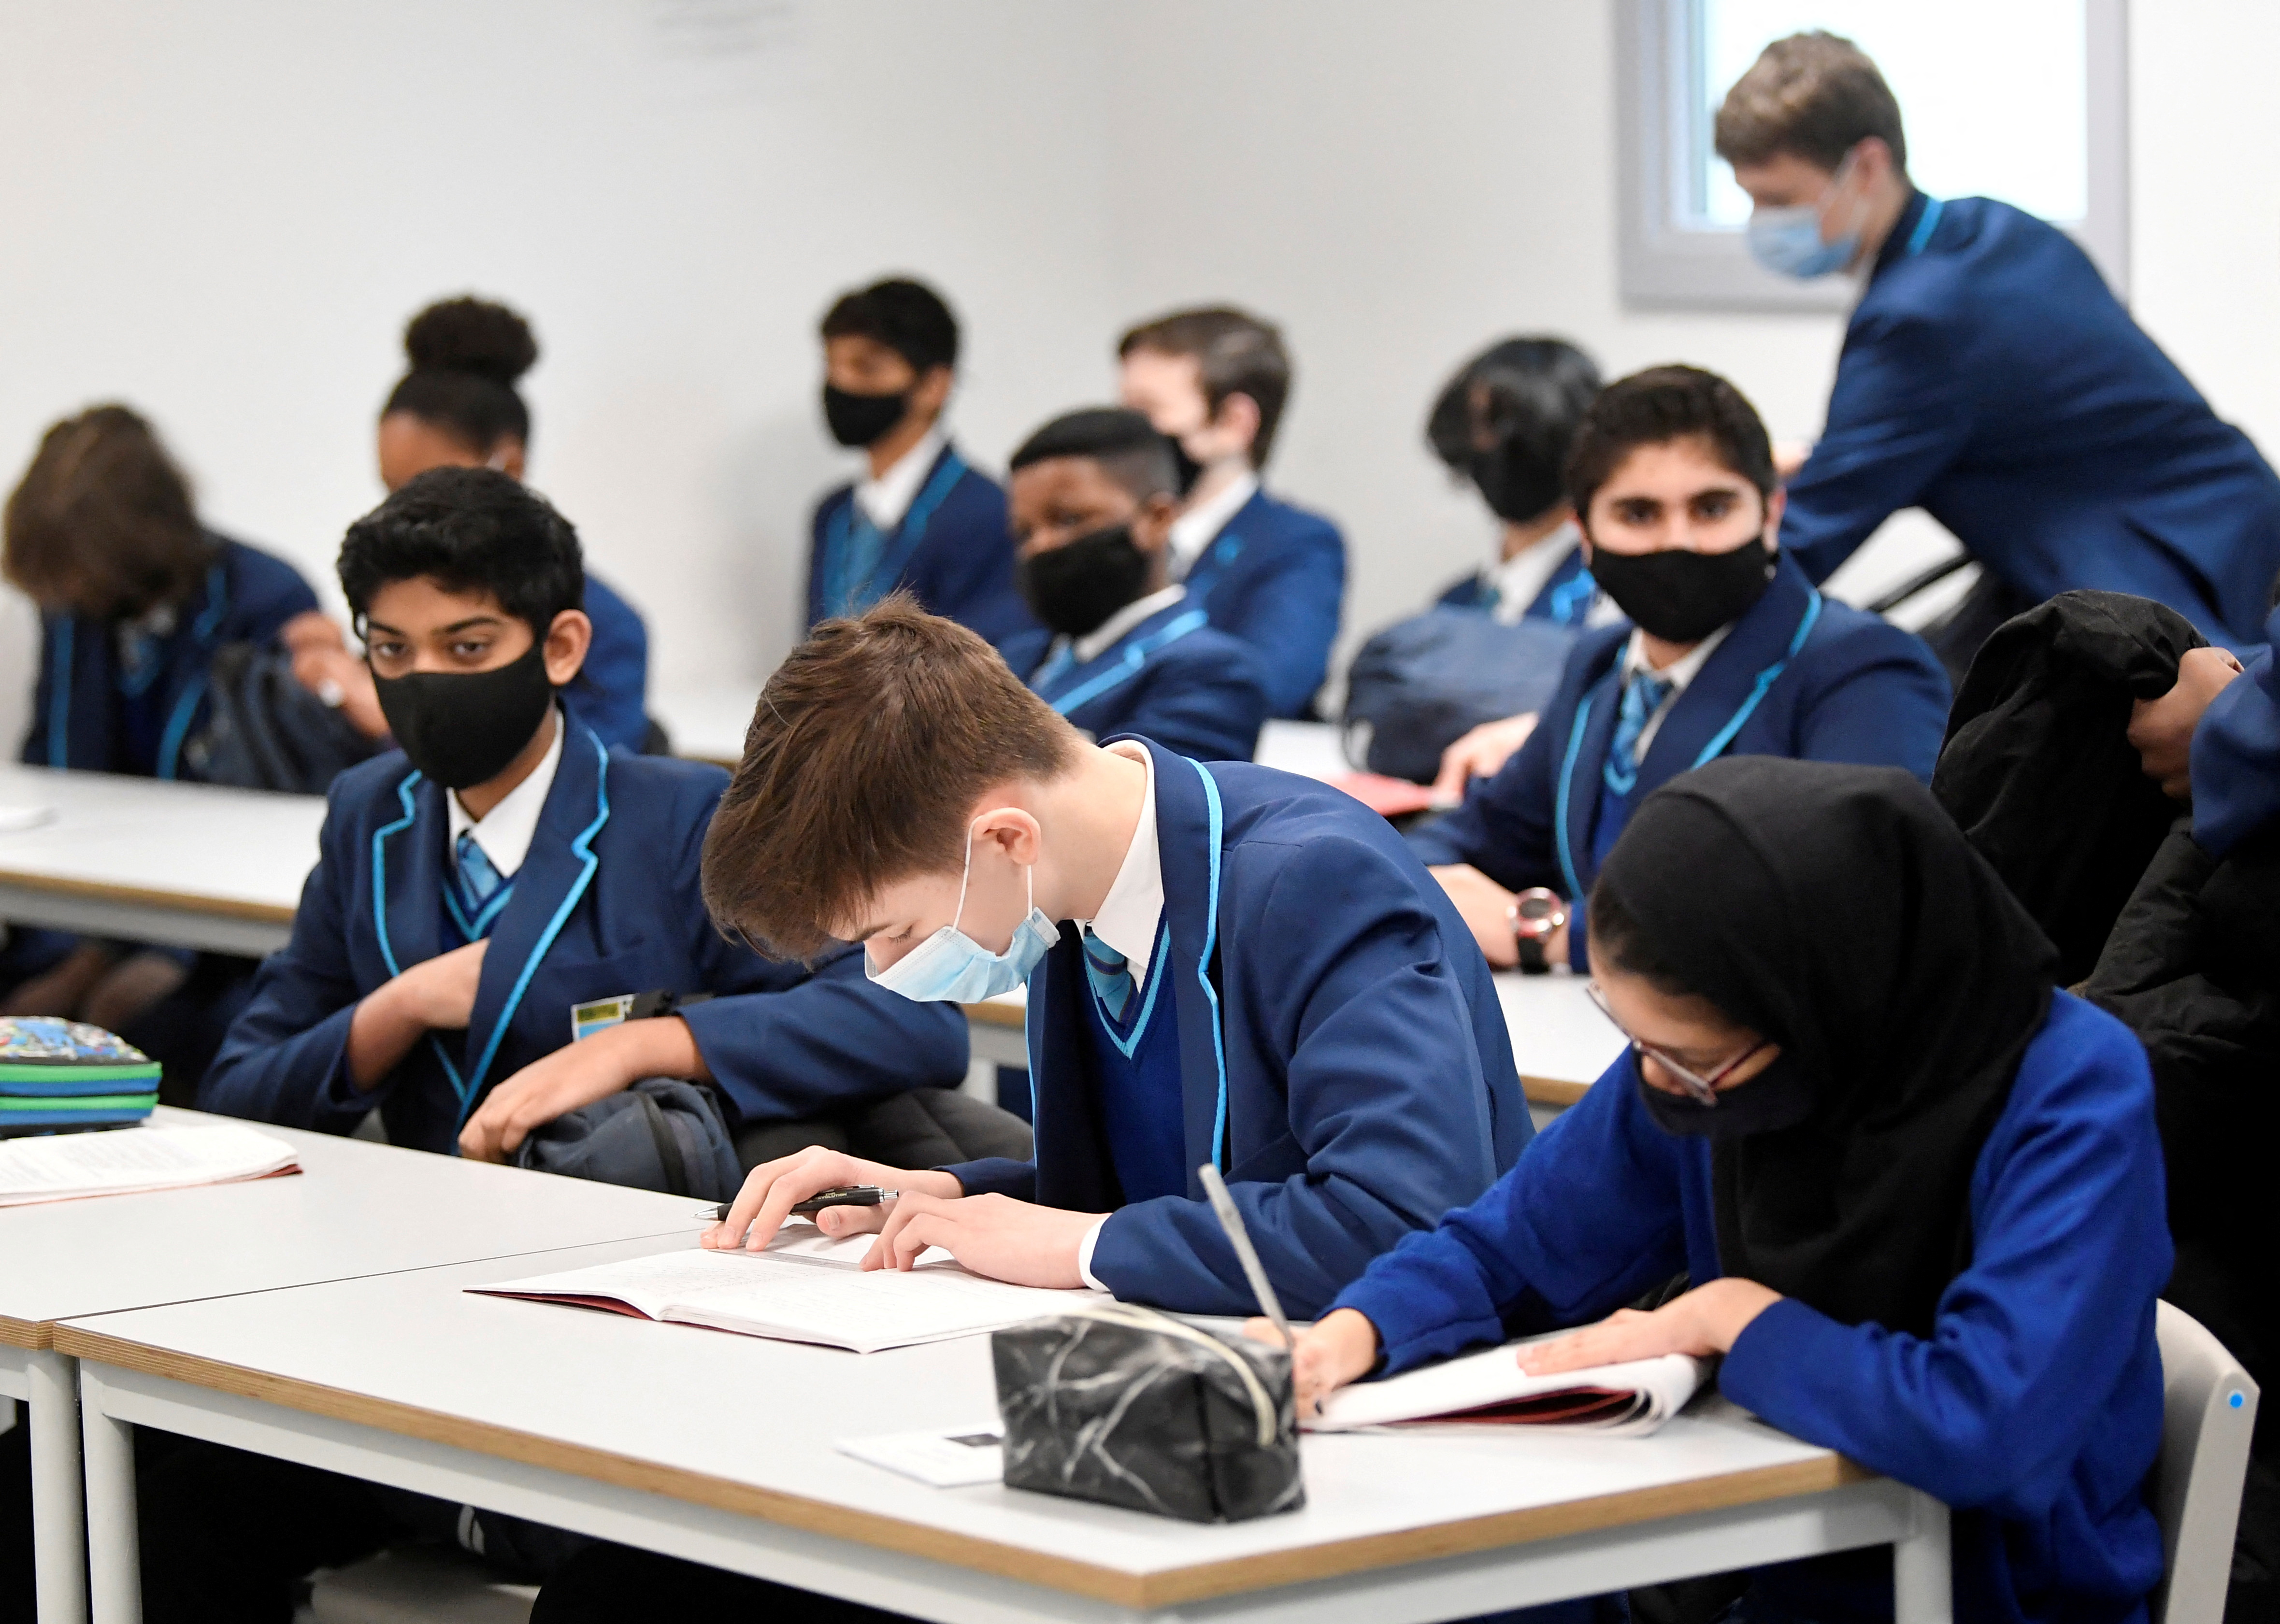 Los estudiantes de secundaria deben llevat mascarillas en las clases  (REUTERS/Toby Melville/File Photo)